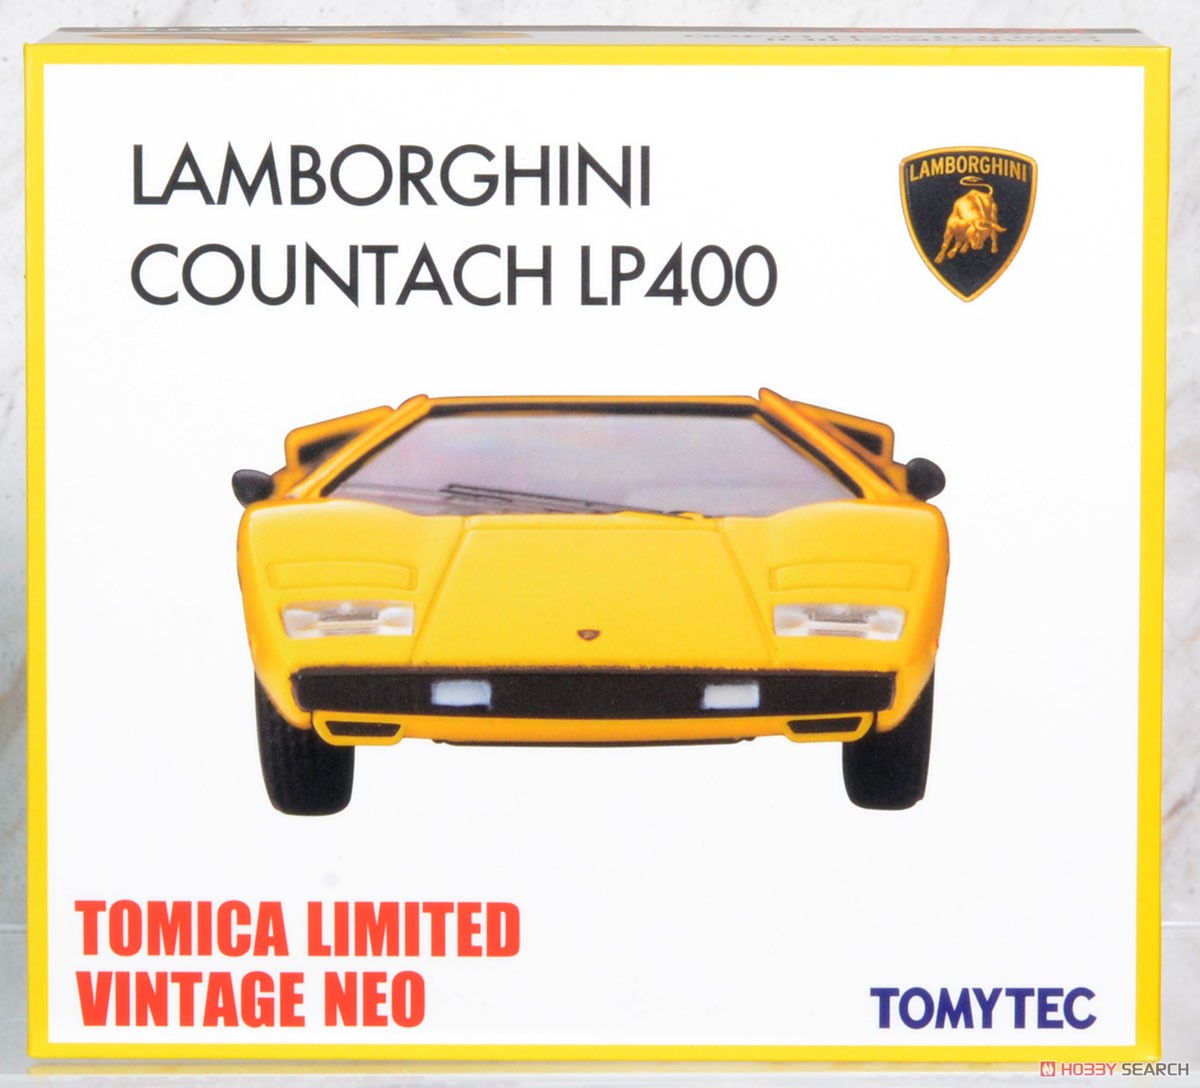 TLV-N ランボルギーニ カウンタック LP400 (黄色) (ミニカー) パッケージ1